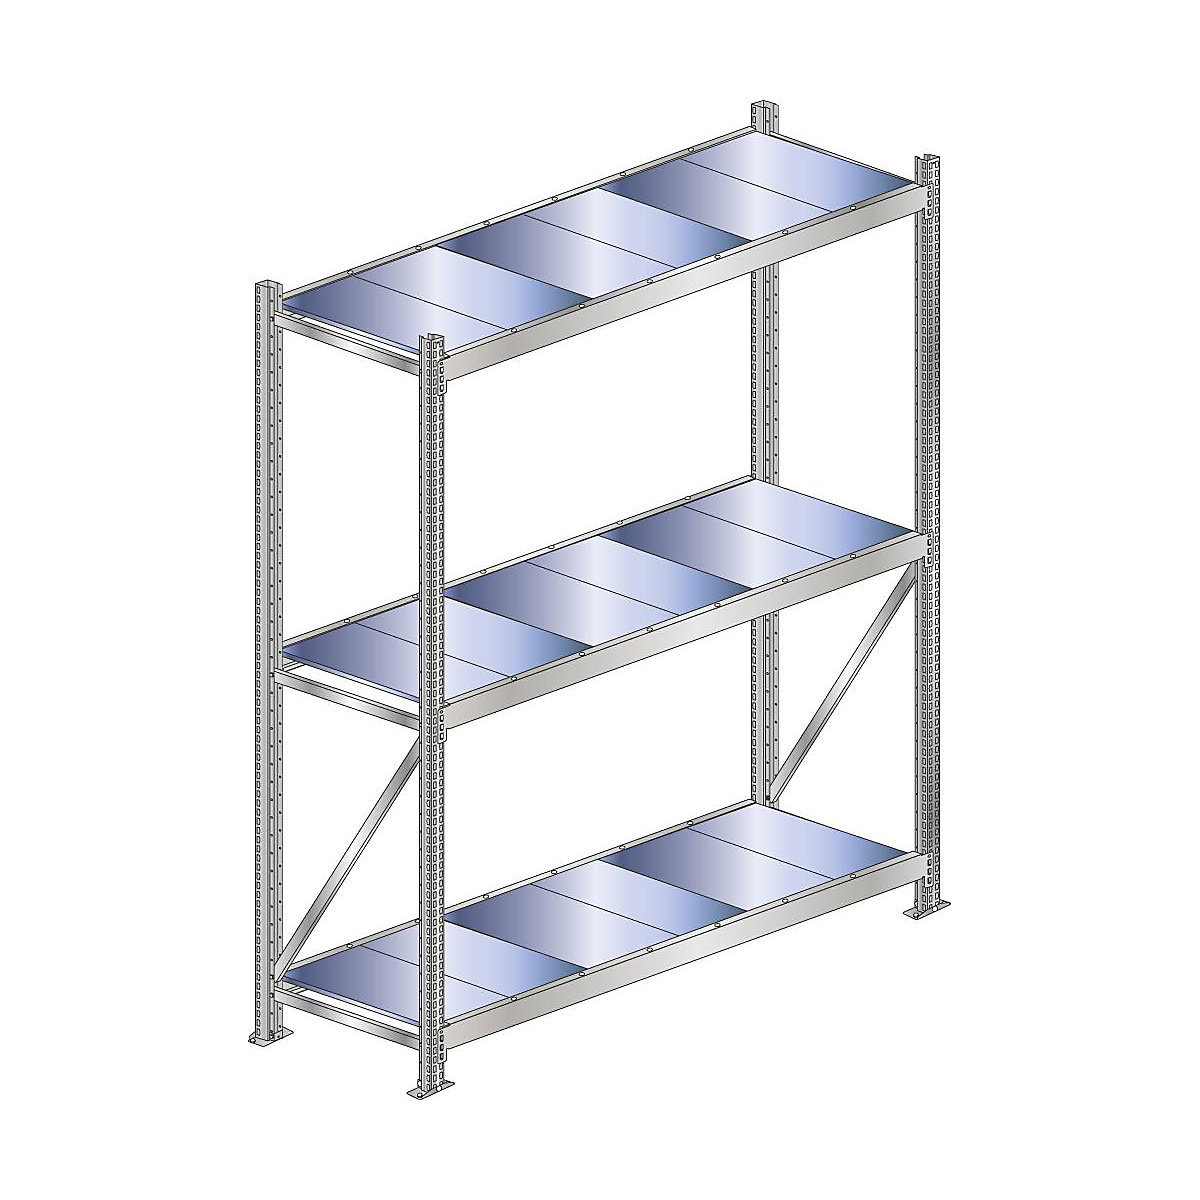 Wide span shelf unit, shelf load 500 kg – SCHULTE